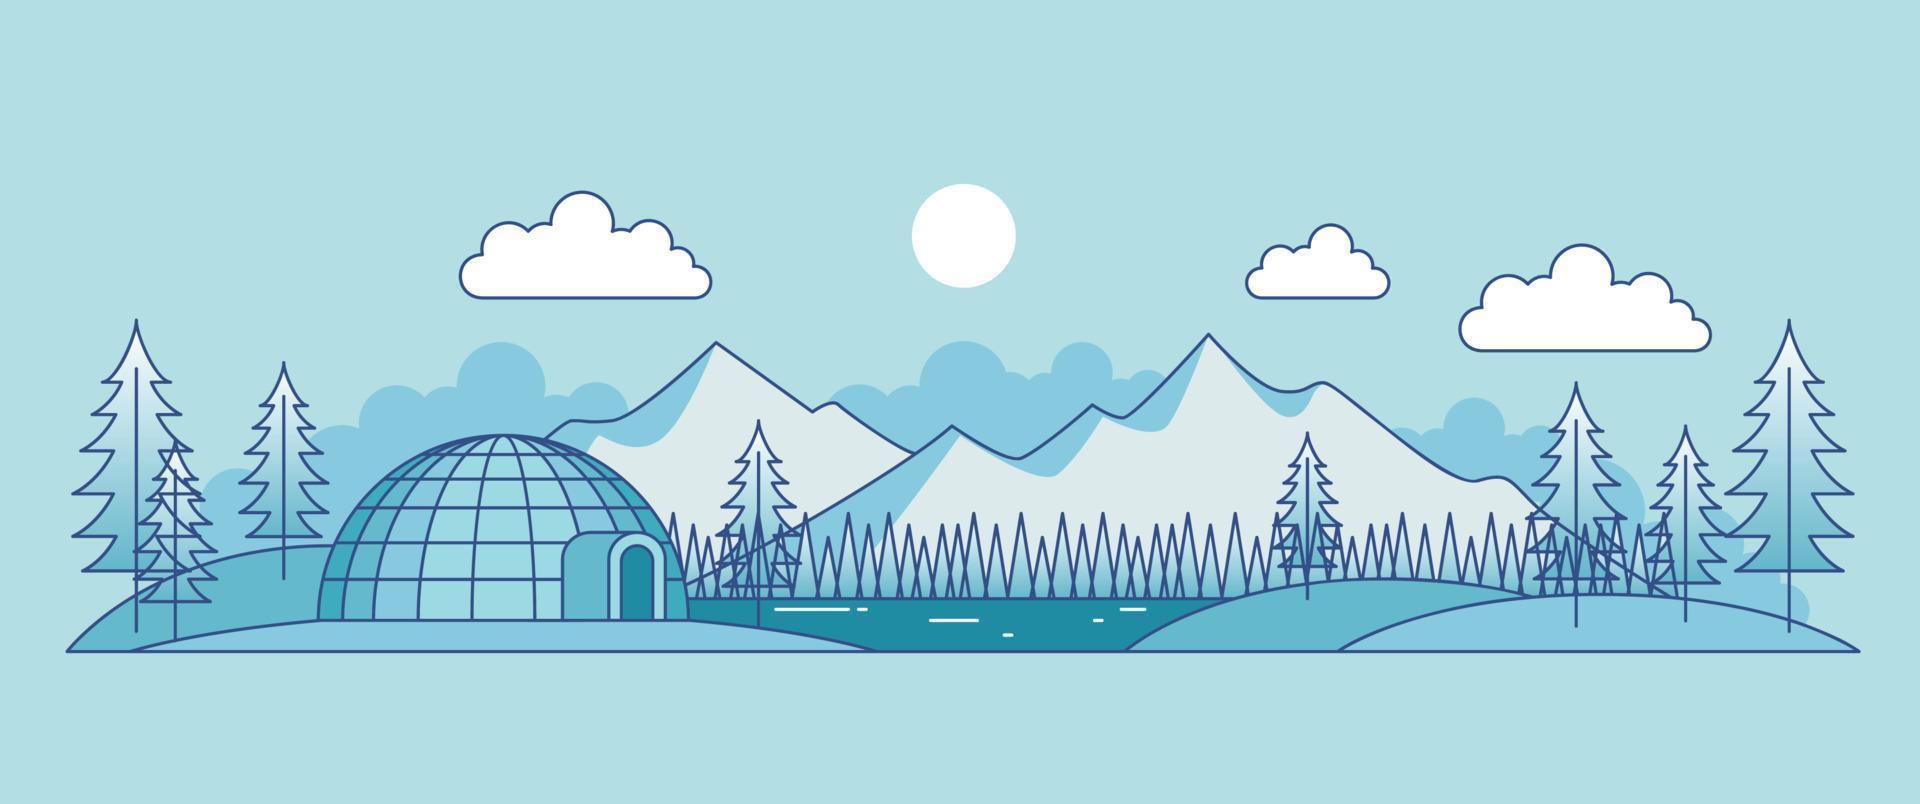 paisajes de temporada de invierno con árboles y diseño de vectores de ilustración de montañas nevadas